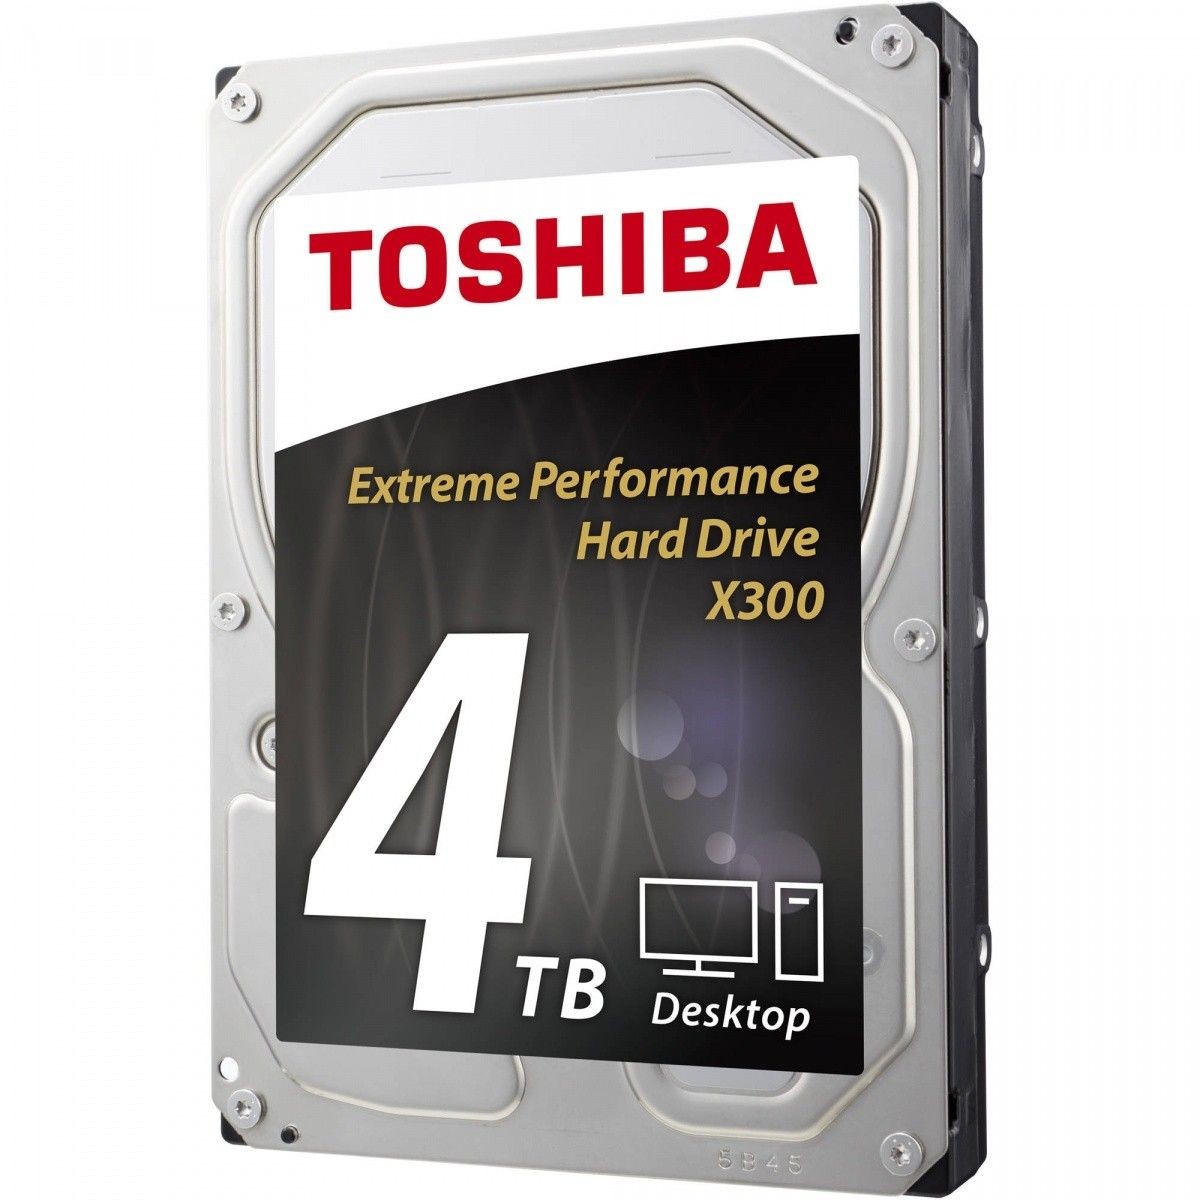 Toshiba X300 Performance - Festplatte - 4 TB - SATA 6Gb/s Die 3,5-Zoll großen X300 Performance Hard Drives sind für den High-Performance- und Gaming-PC-Markt 